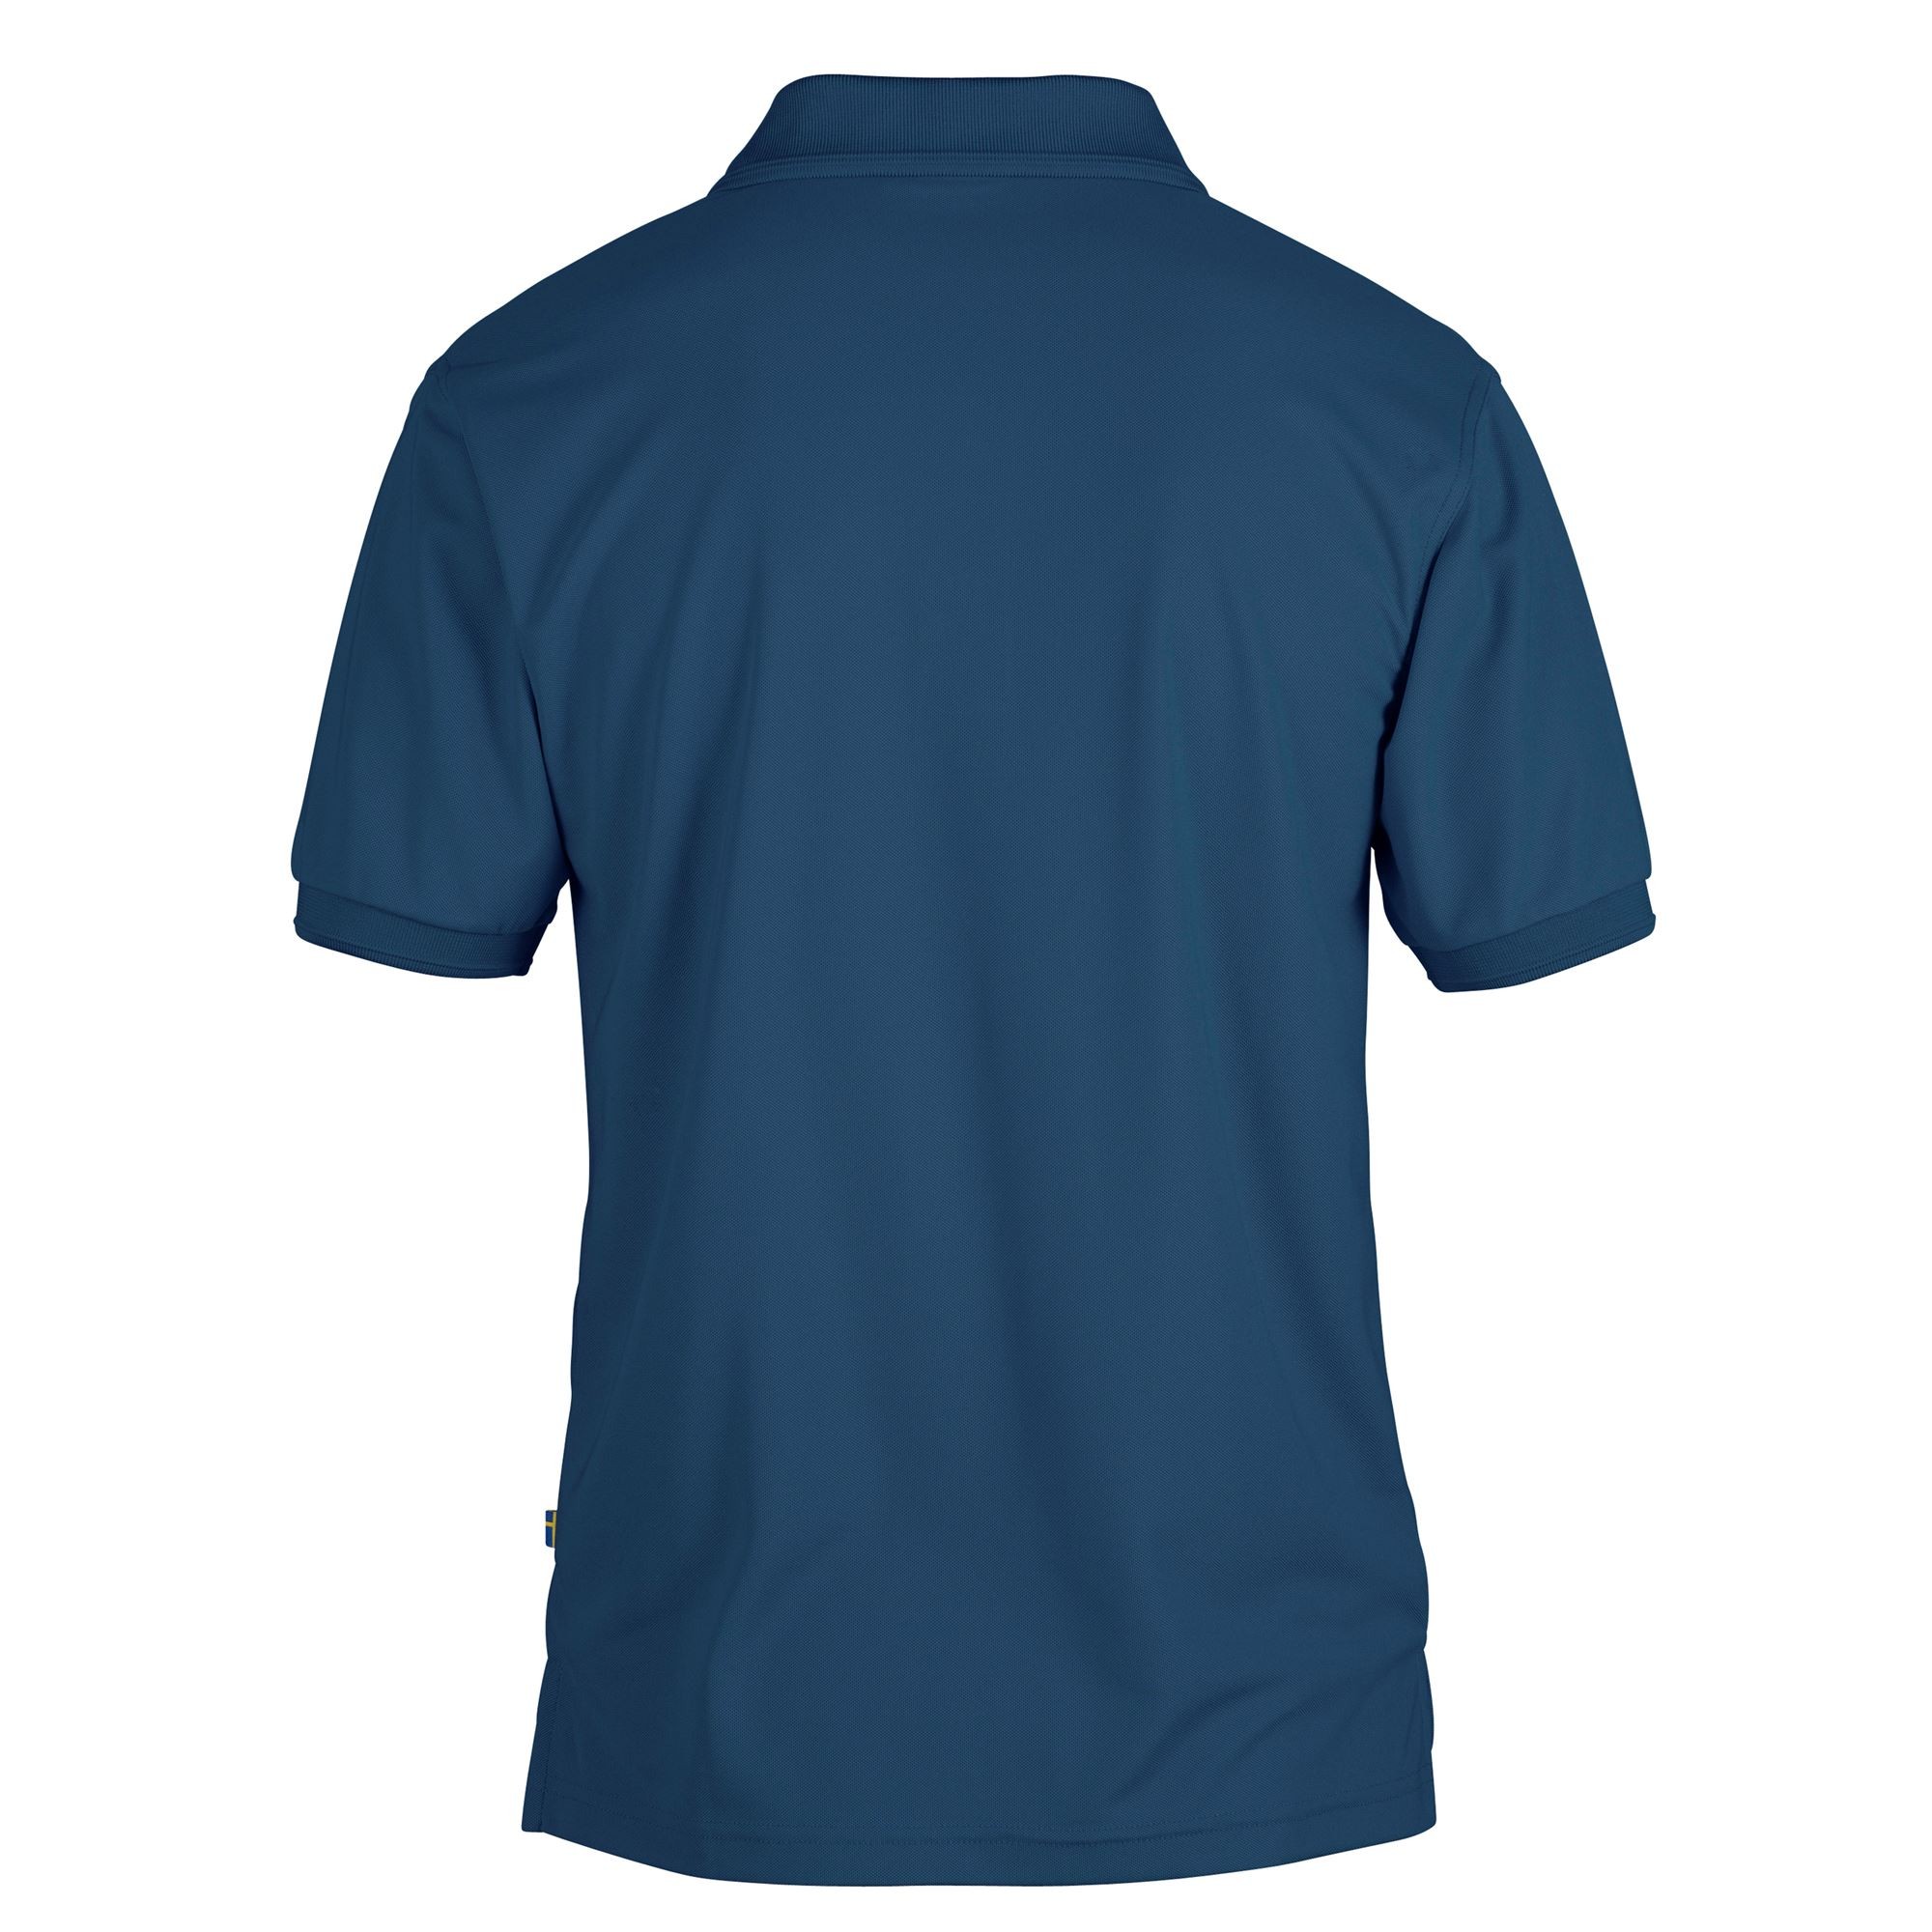 Crowley Pique Shirt, uncle blue